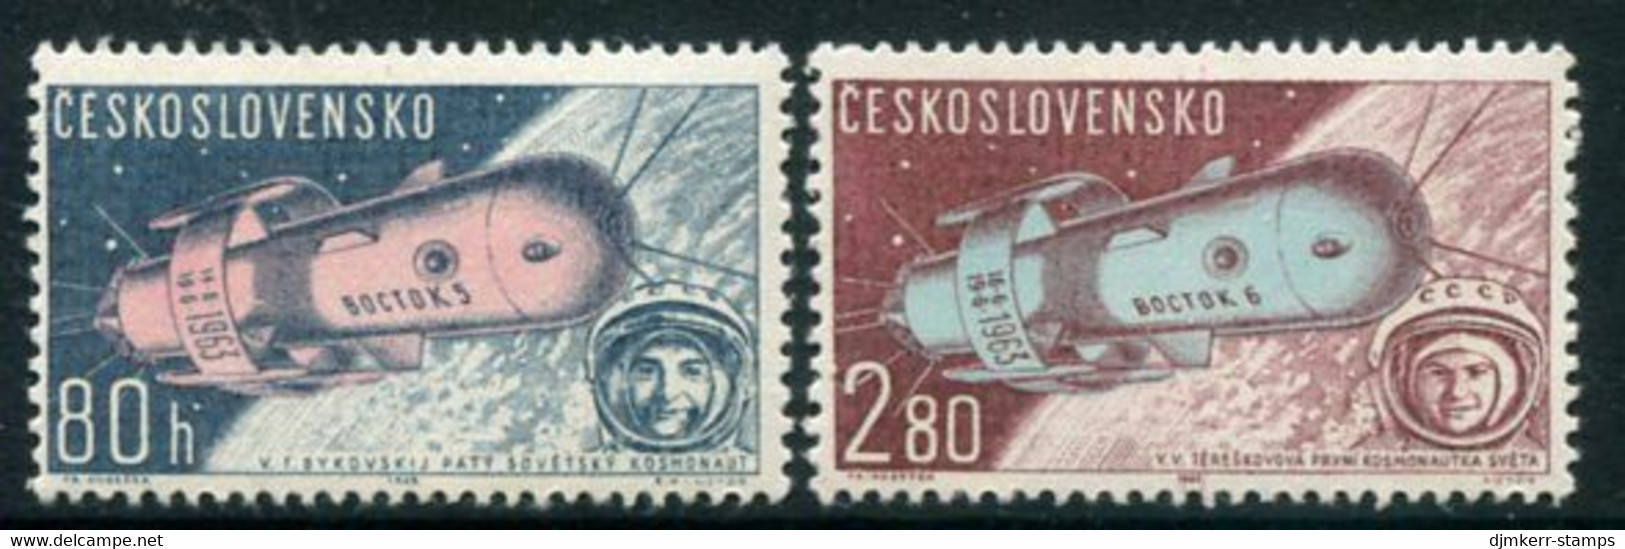 CZECHOSLOVAKIA 1963 Vostok 5 And 6 Space Flights MNH / **.  Michel 1413-14 - Ungebraucht